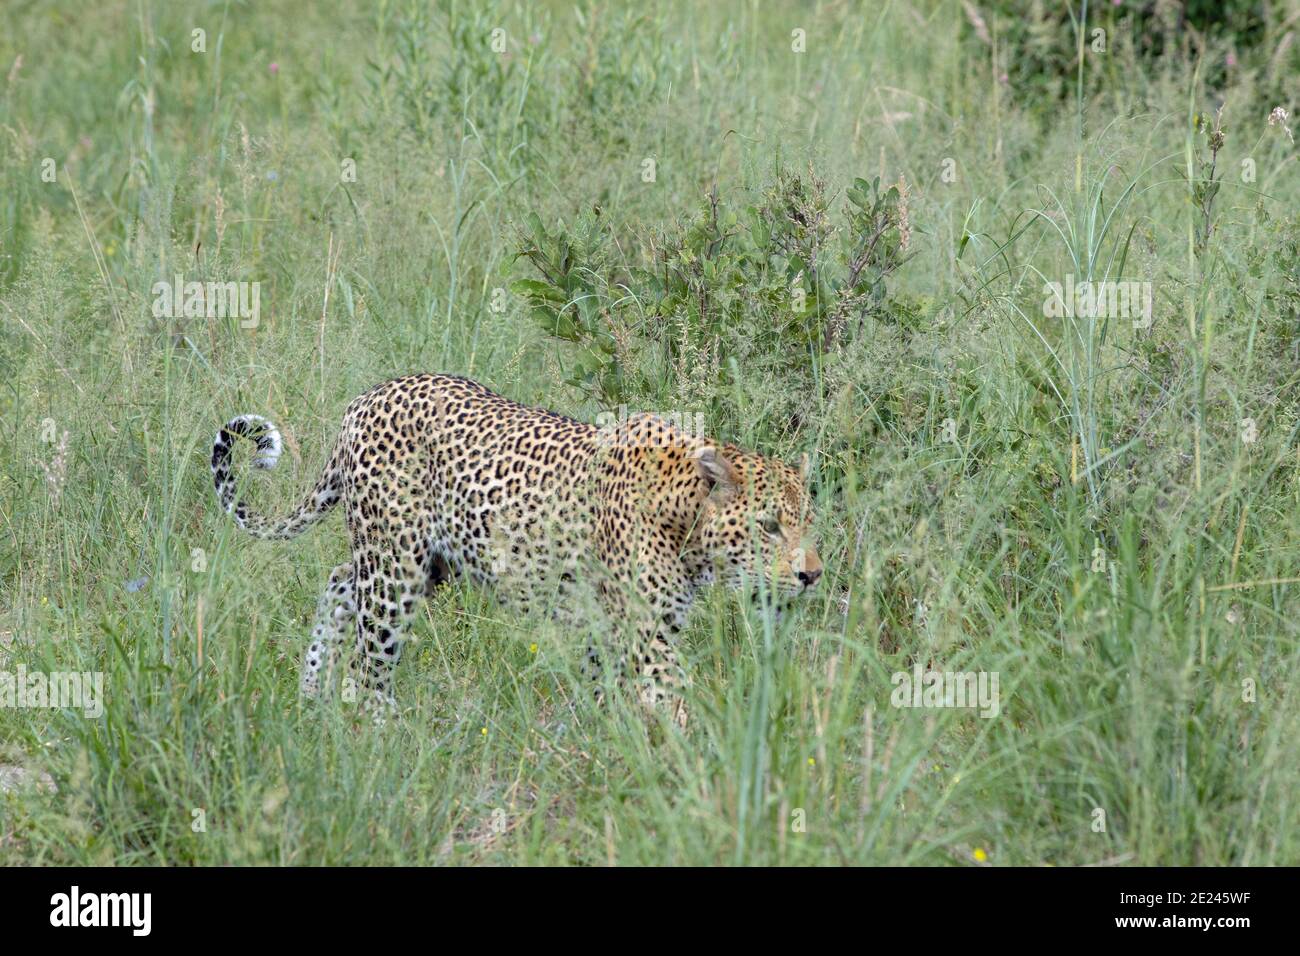 Leopard (Panthera pardus). Aktivität bei Tageslicht. Tiere im Freien gefangen Wandern, teilweise abgeschirmt, durch Aussaat Gräser von Safari-Fahrzeug. Botswana. Stockfoto